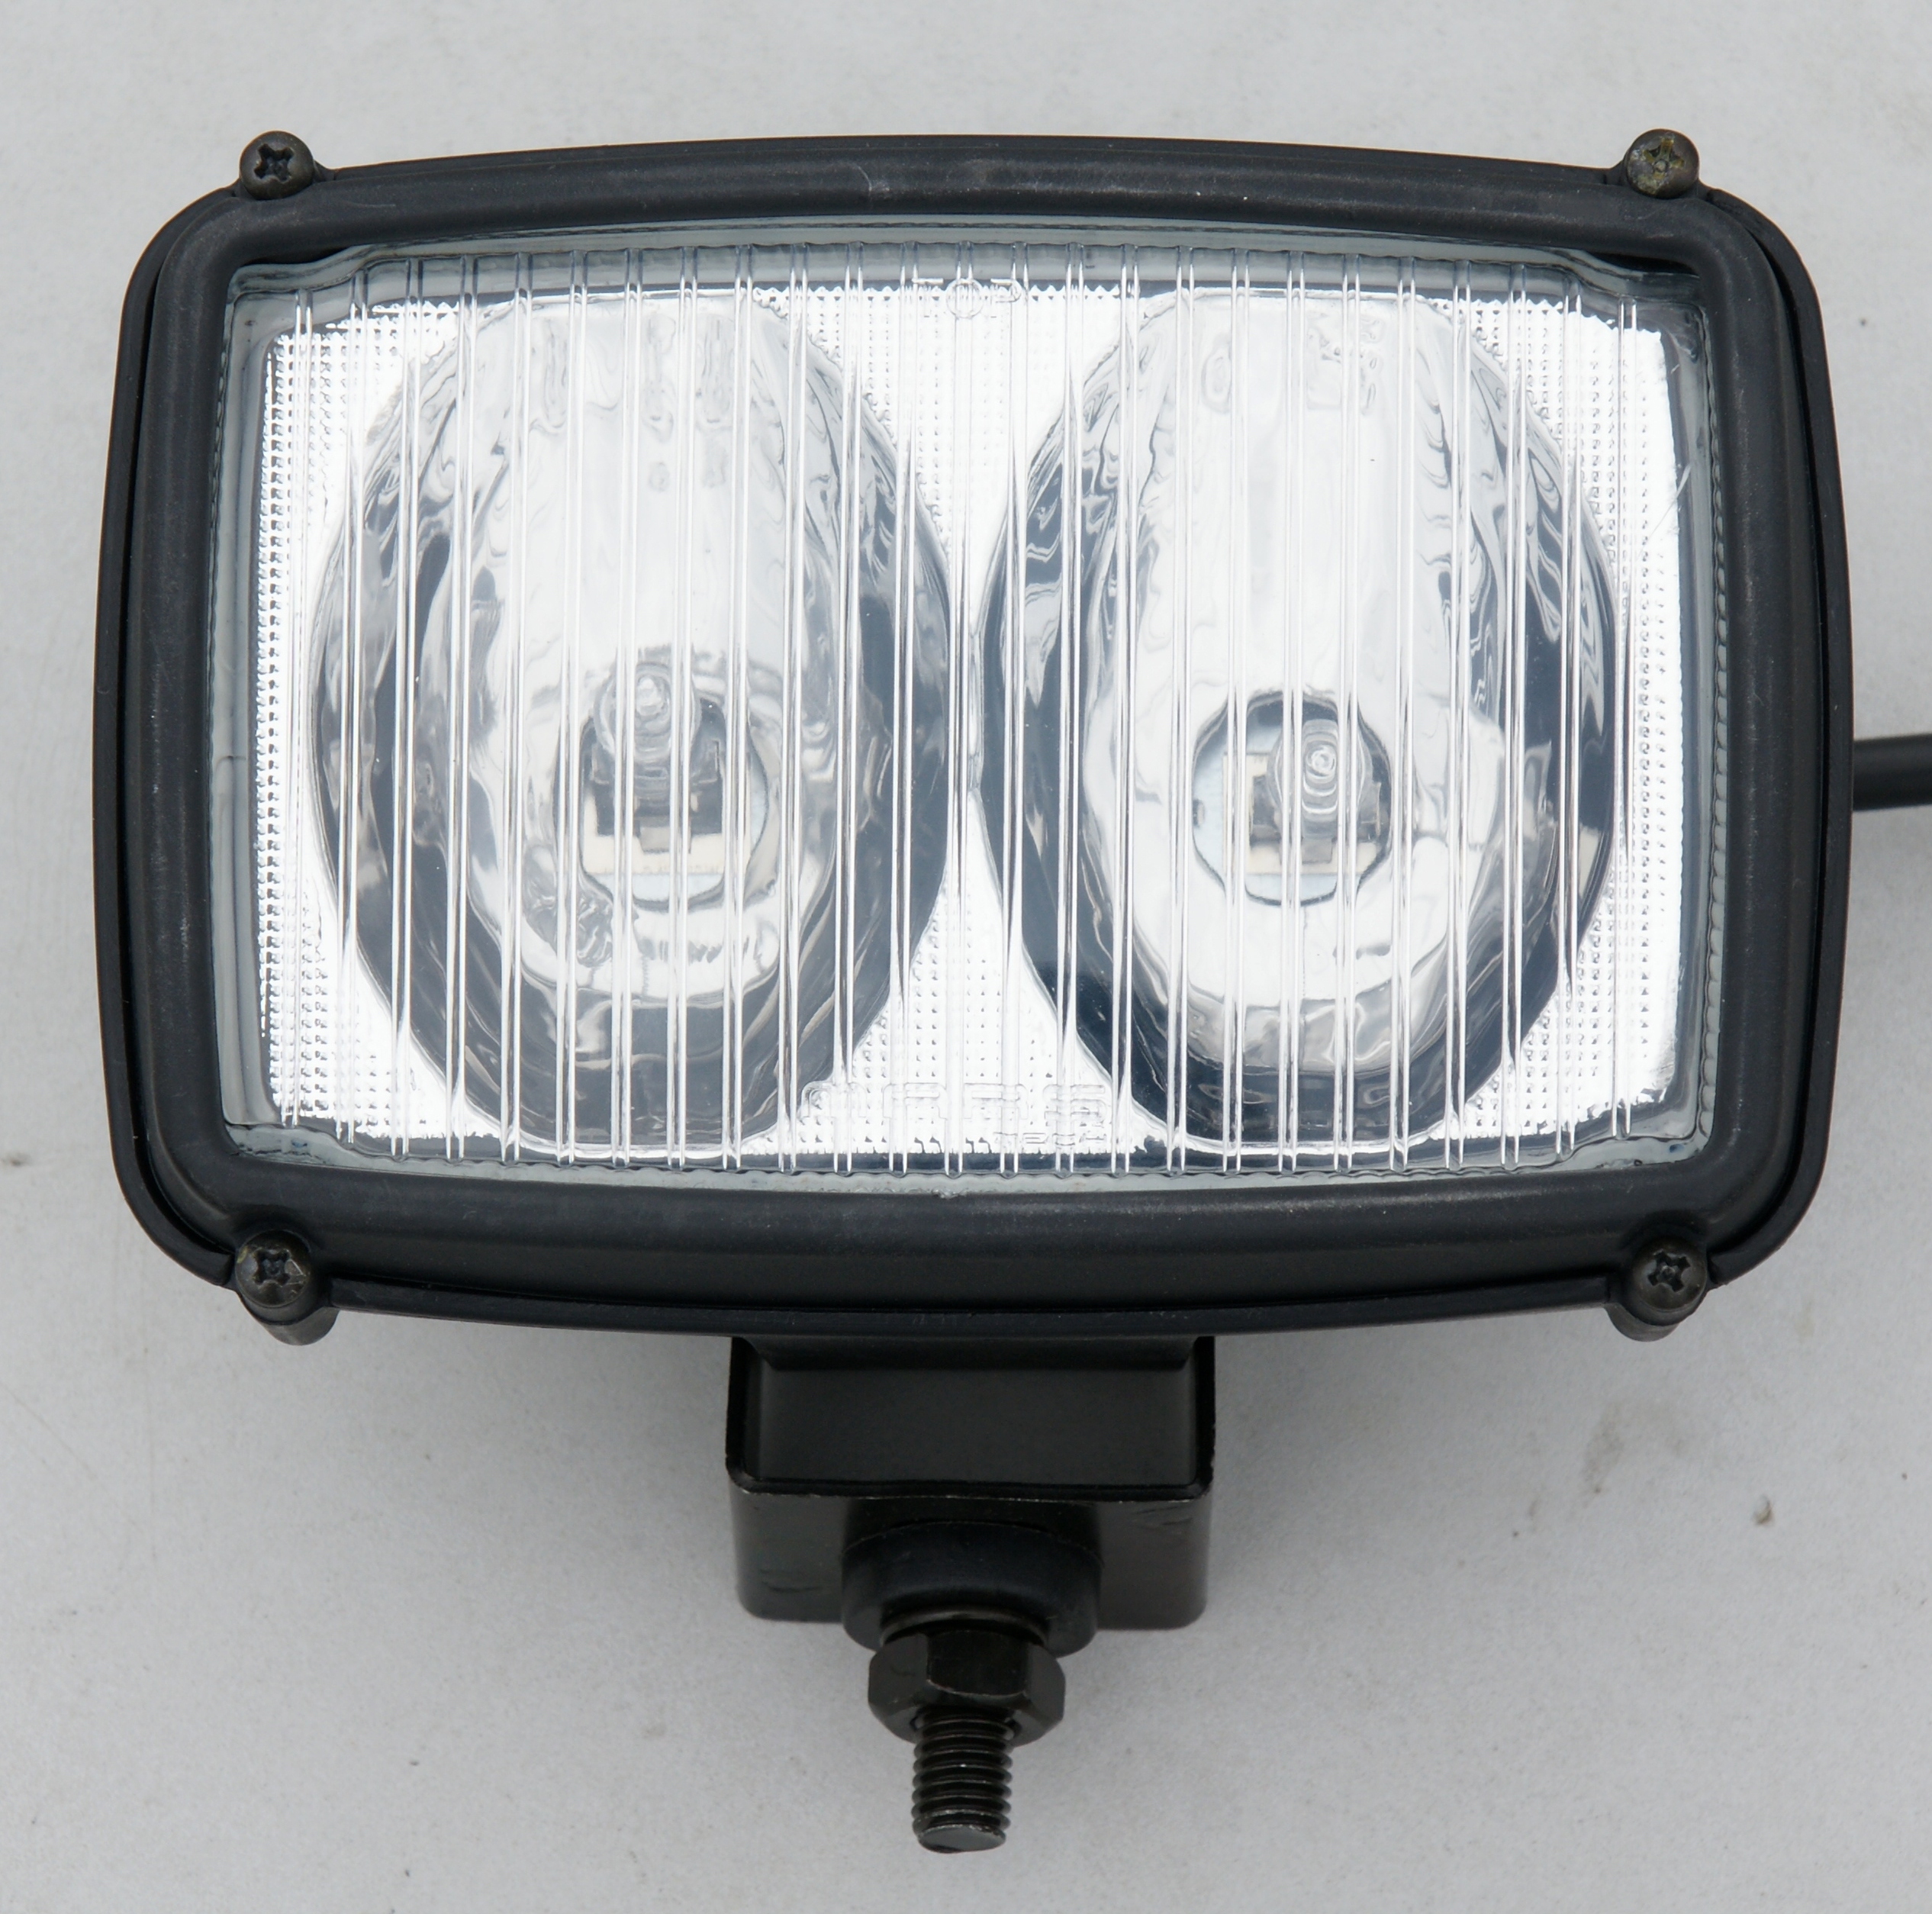 VGA12028 replacement light lamp lense fitting for John Deere tractor harvester gator